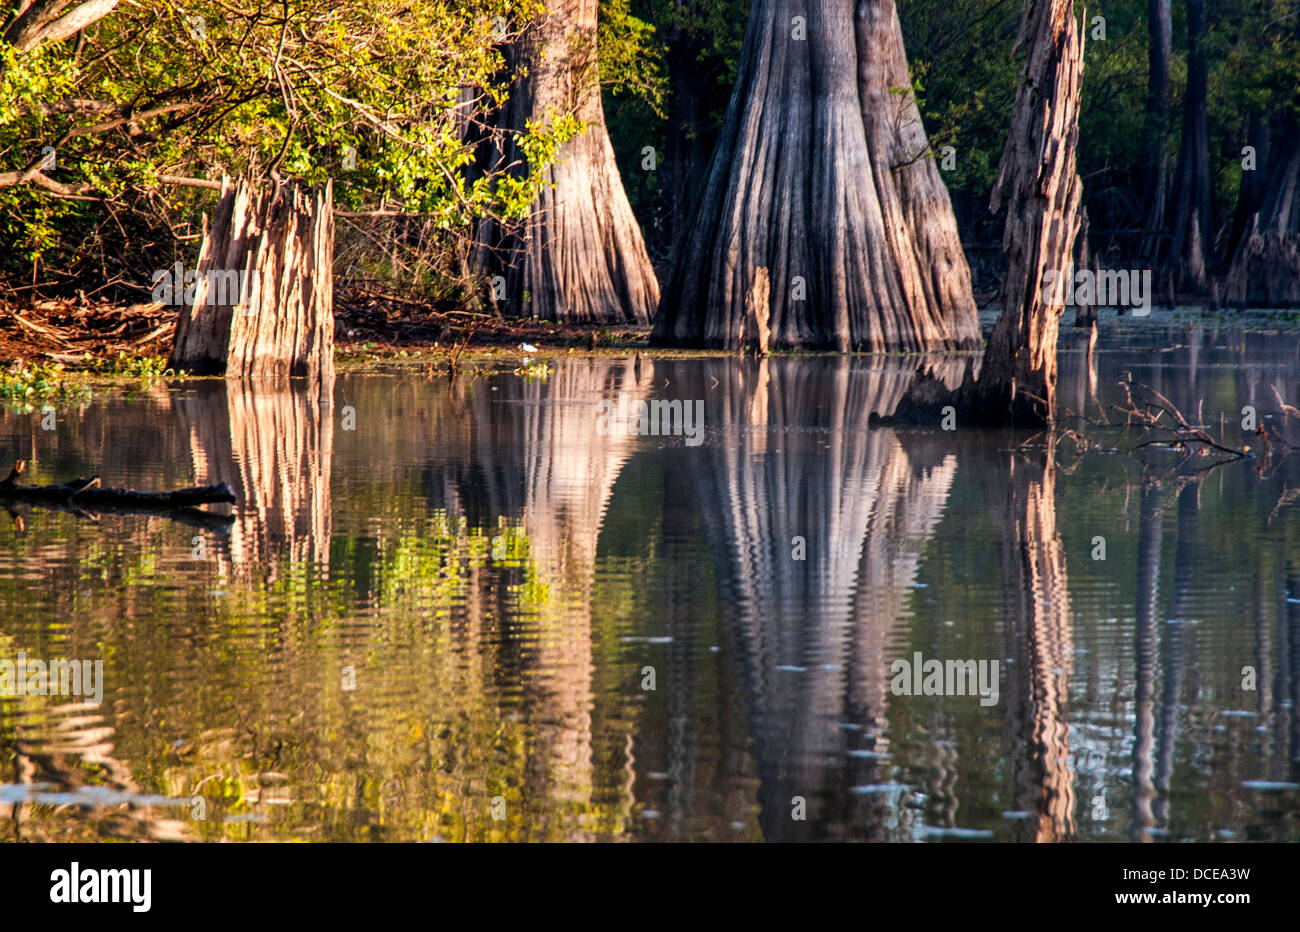 USA, Louisiana, Atchafalaya Basin, Pierce Lake at sunrise, bald cypress standing in water. Stock Photo